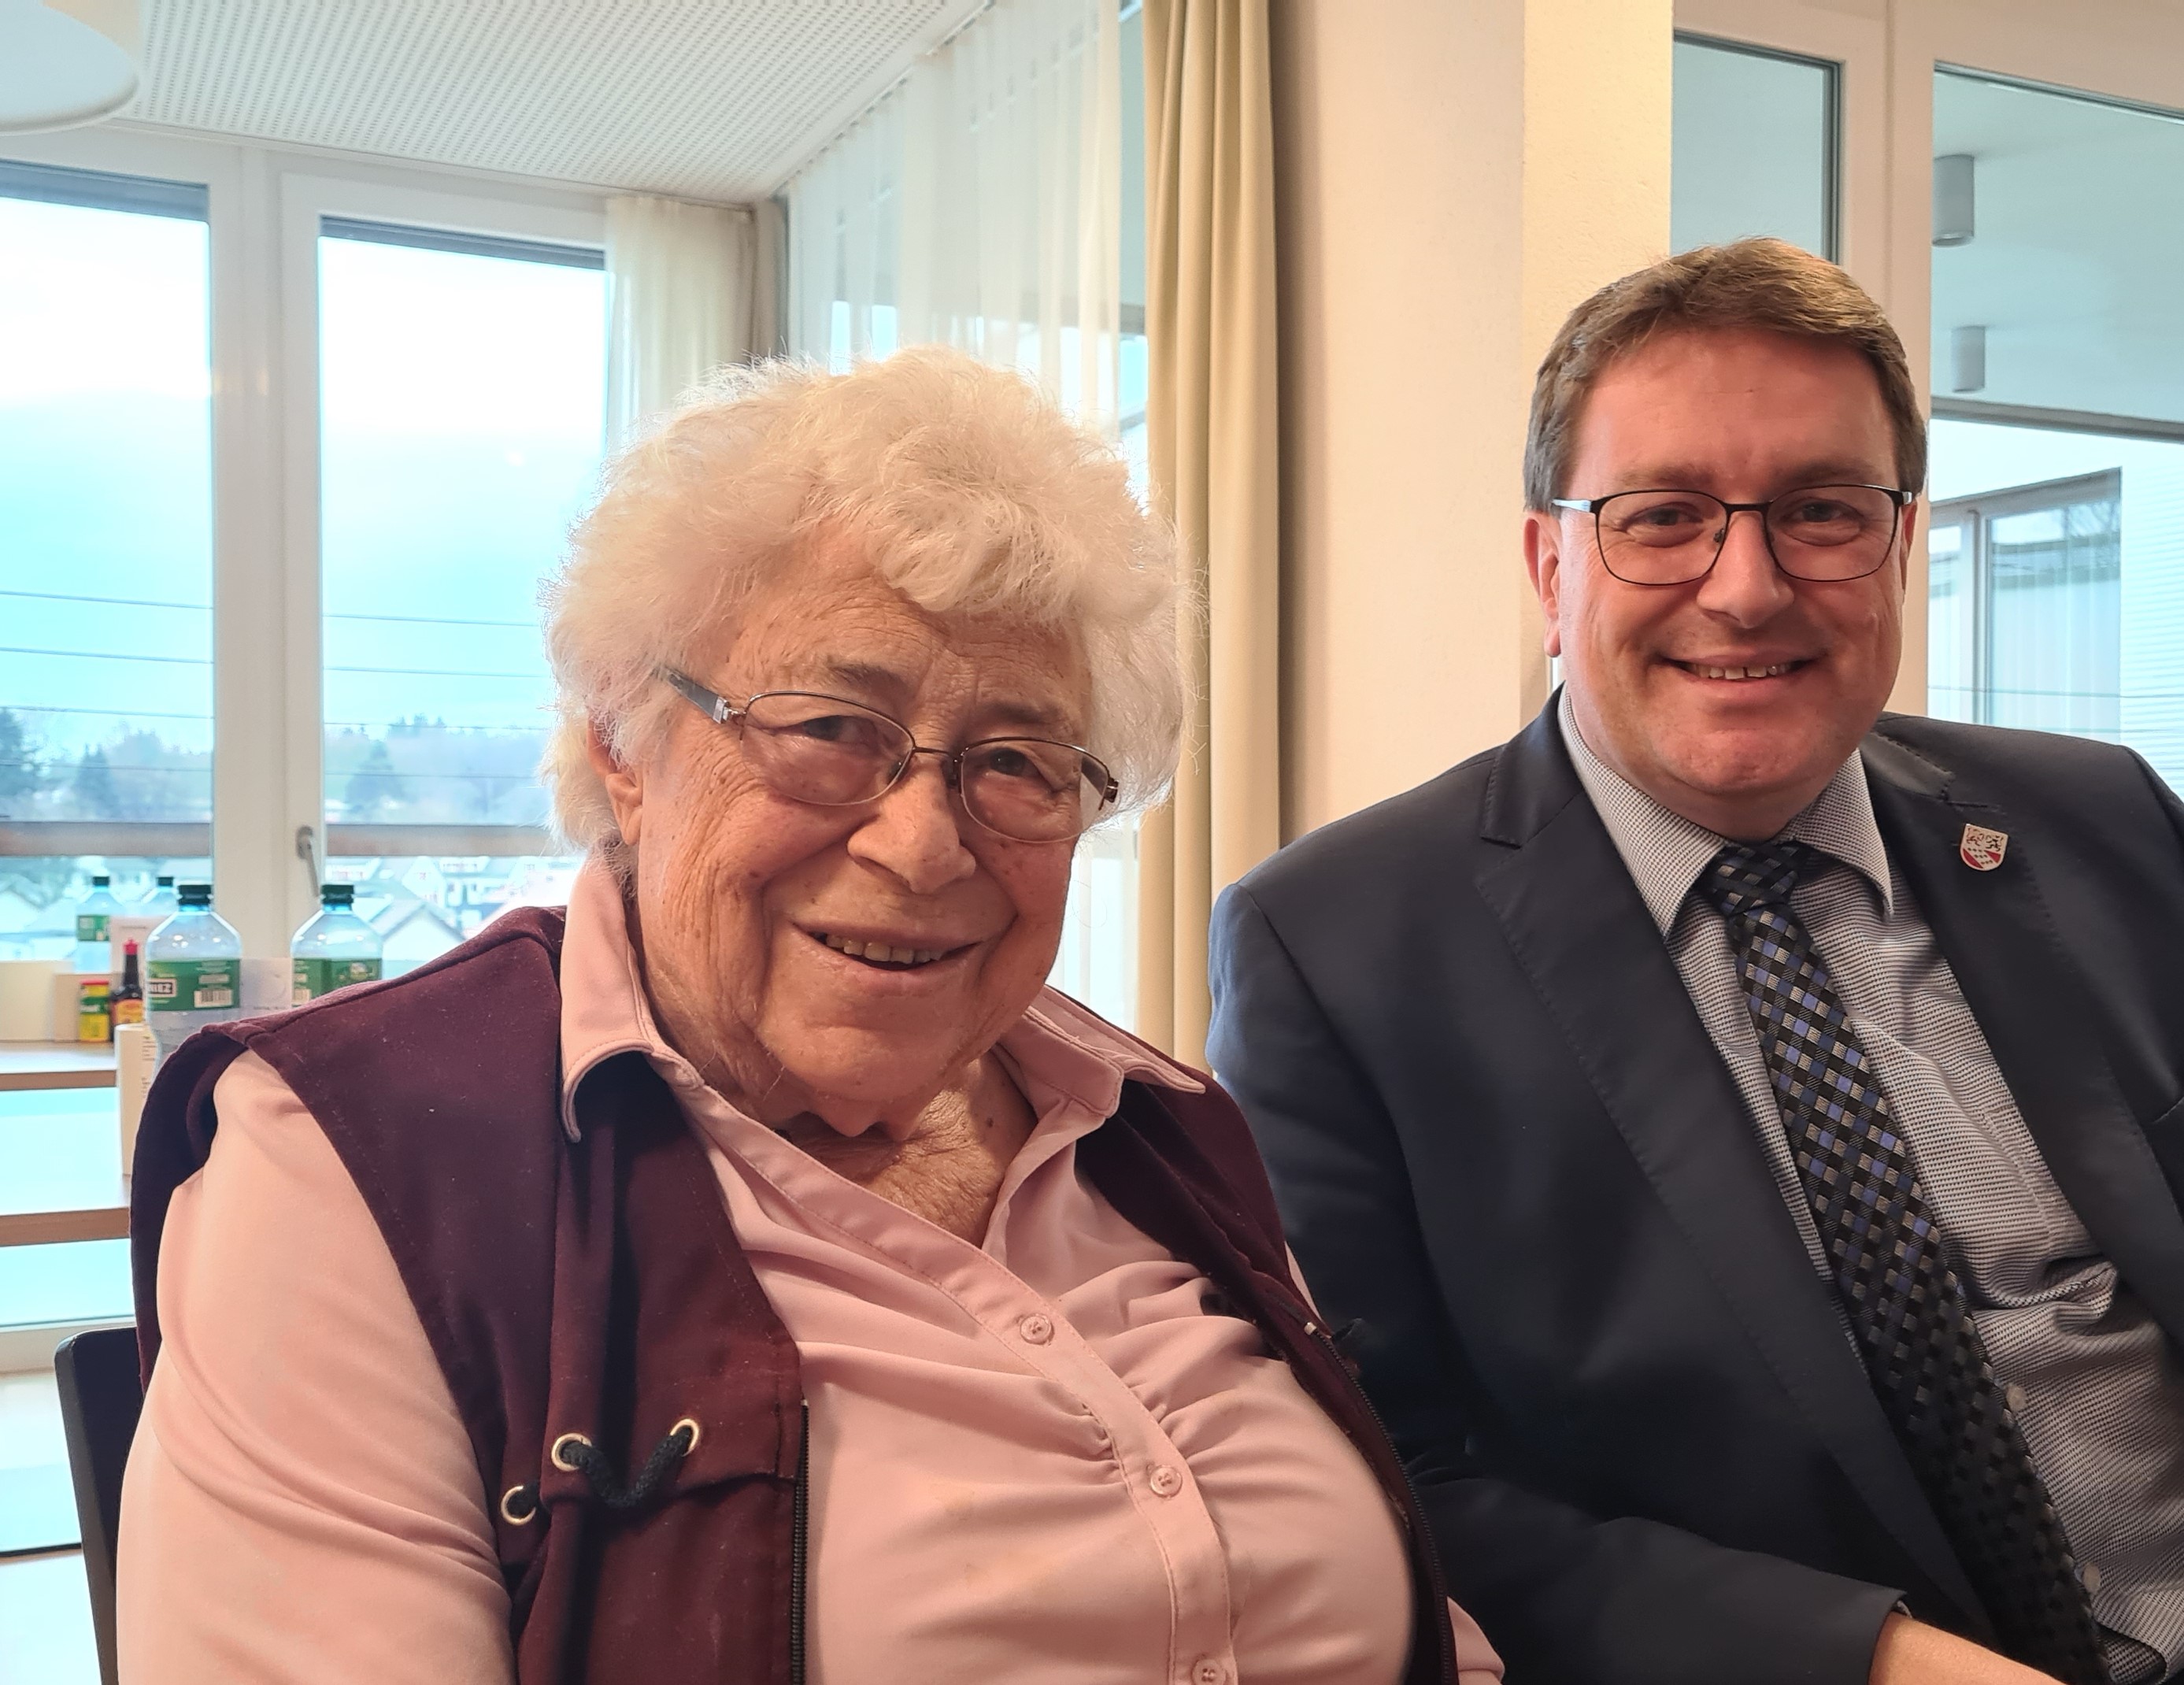 Bei bester Gesundheit durfte Frau Liselotte Ryter am 12. Dezember 2022 ihren 90. Geburtstag feiern.
Die Gemeindebehörden gratulieren herzlich dazu!